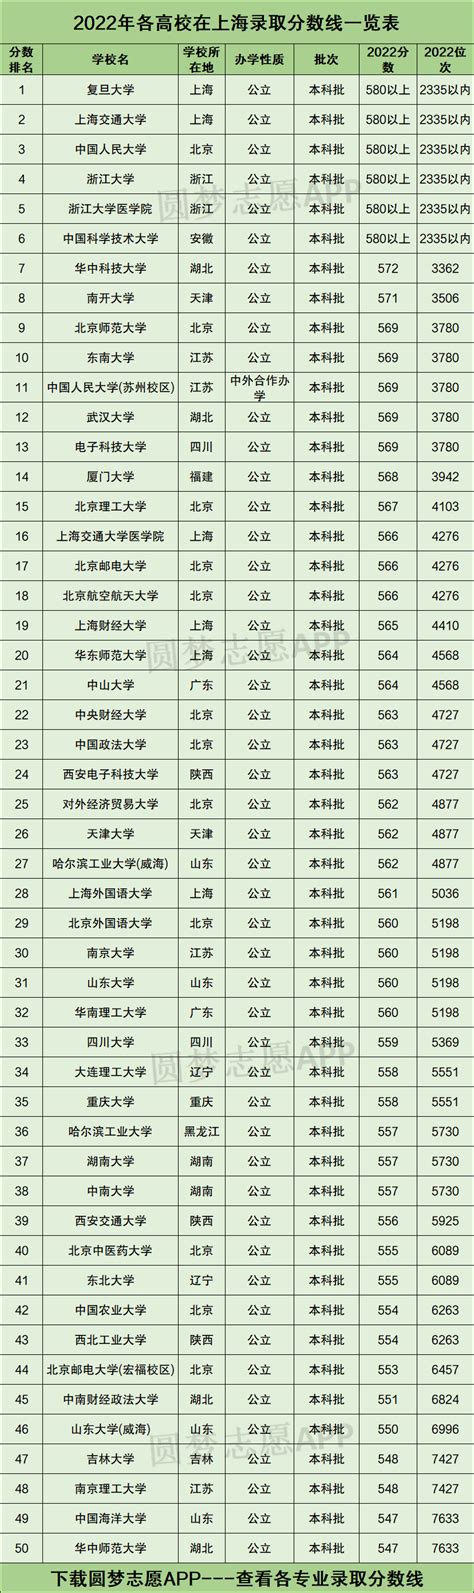 上海高考今年多少人？2022年高考报名总人数预测 - 知乎